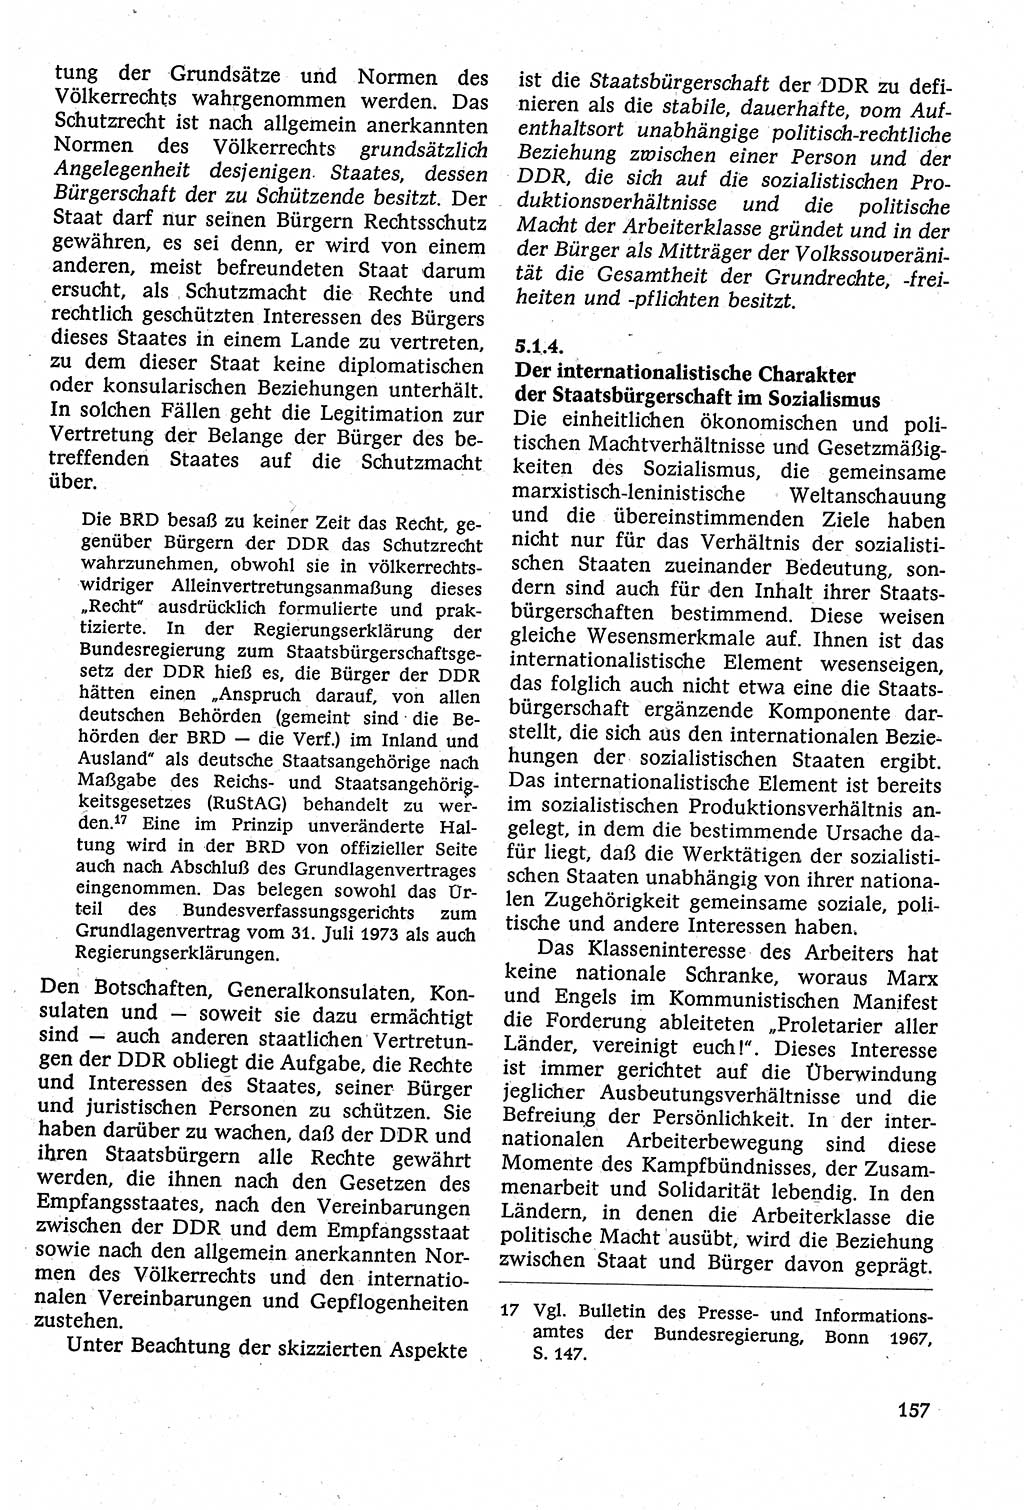 Staatsrecht der DDR [Deutsche Demokratische Republik (DDR)], Lehrbuch 1984, Seite 157 (St.-R. DDR Lb. 1984, S. 157)